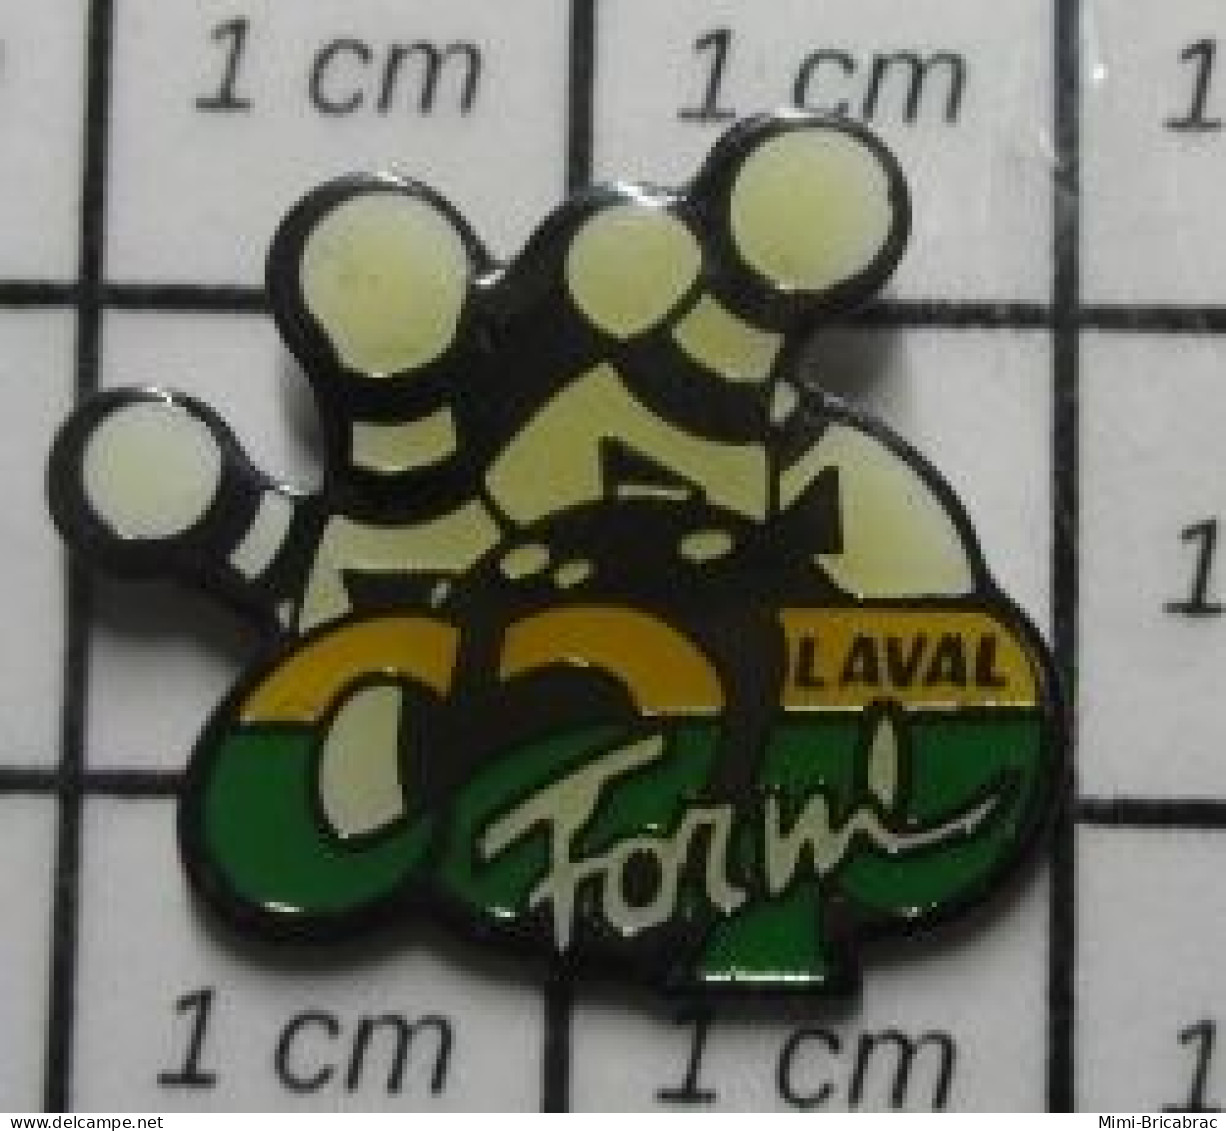 519 Pin's Pins / Rare Et De Belle Qualité !!! SPORTS / BOWLING LAVAL FORM' - Bowling